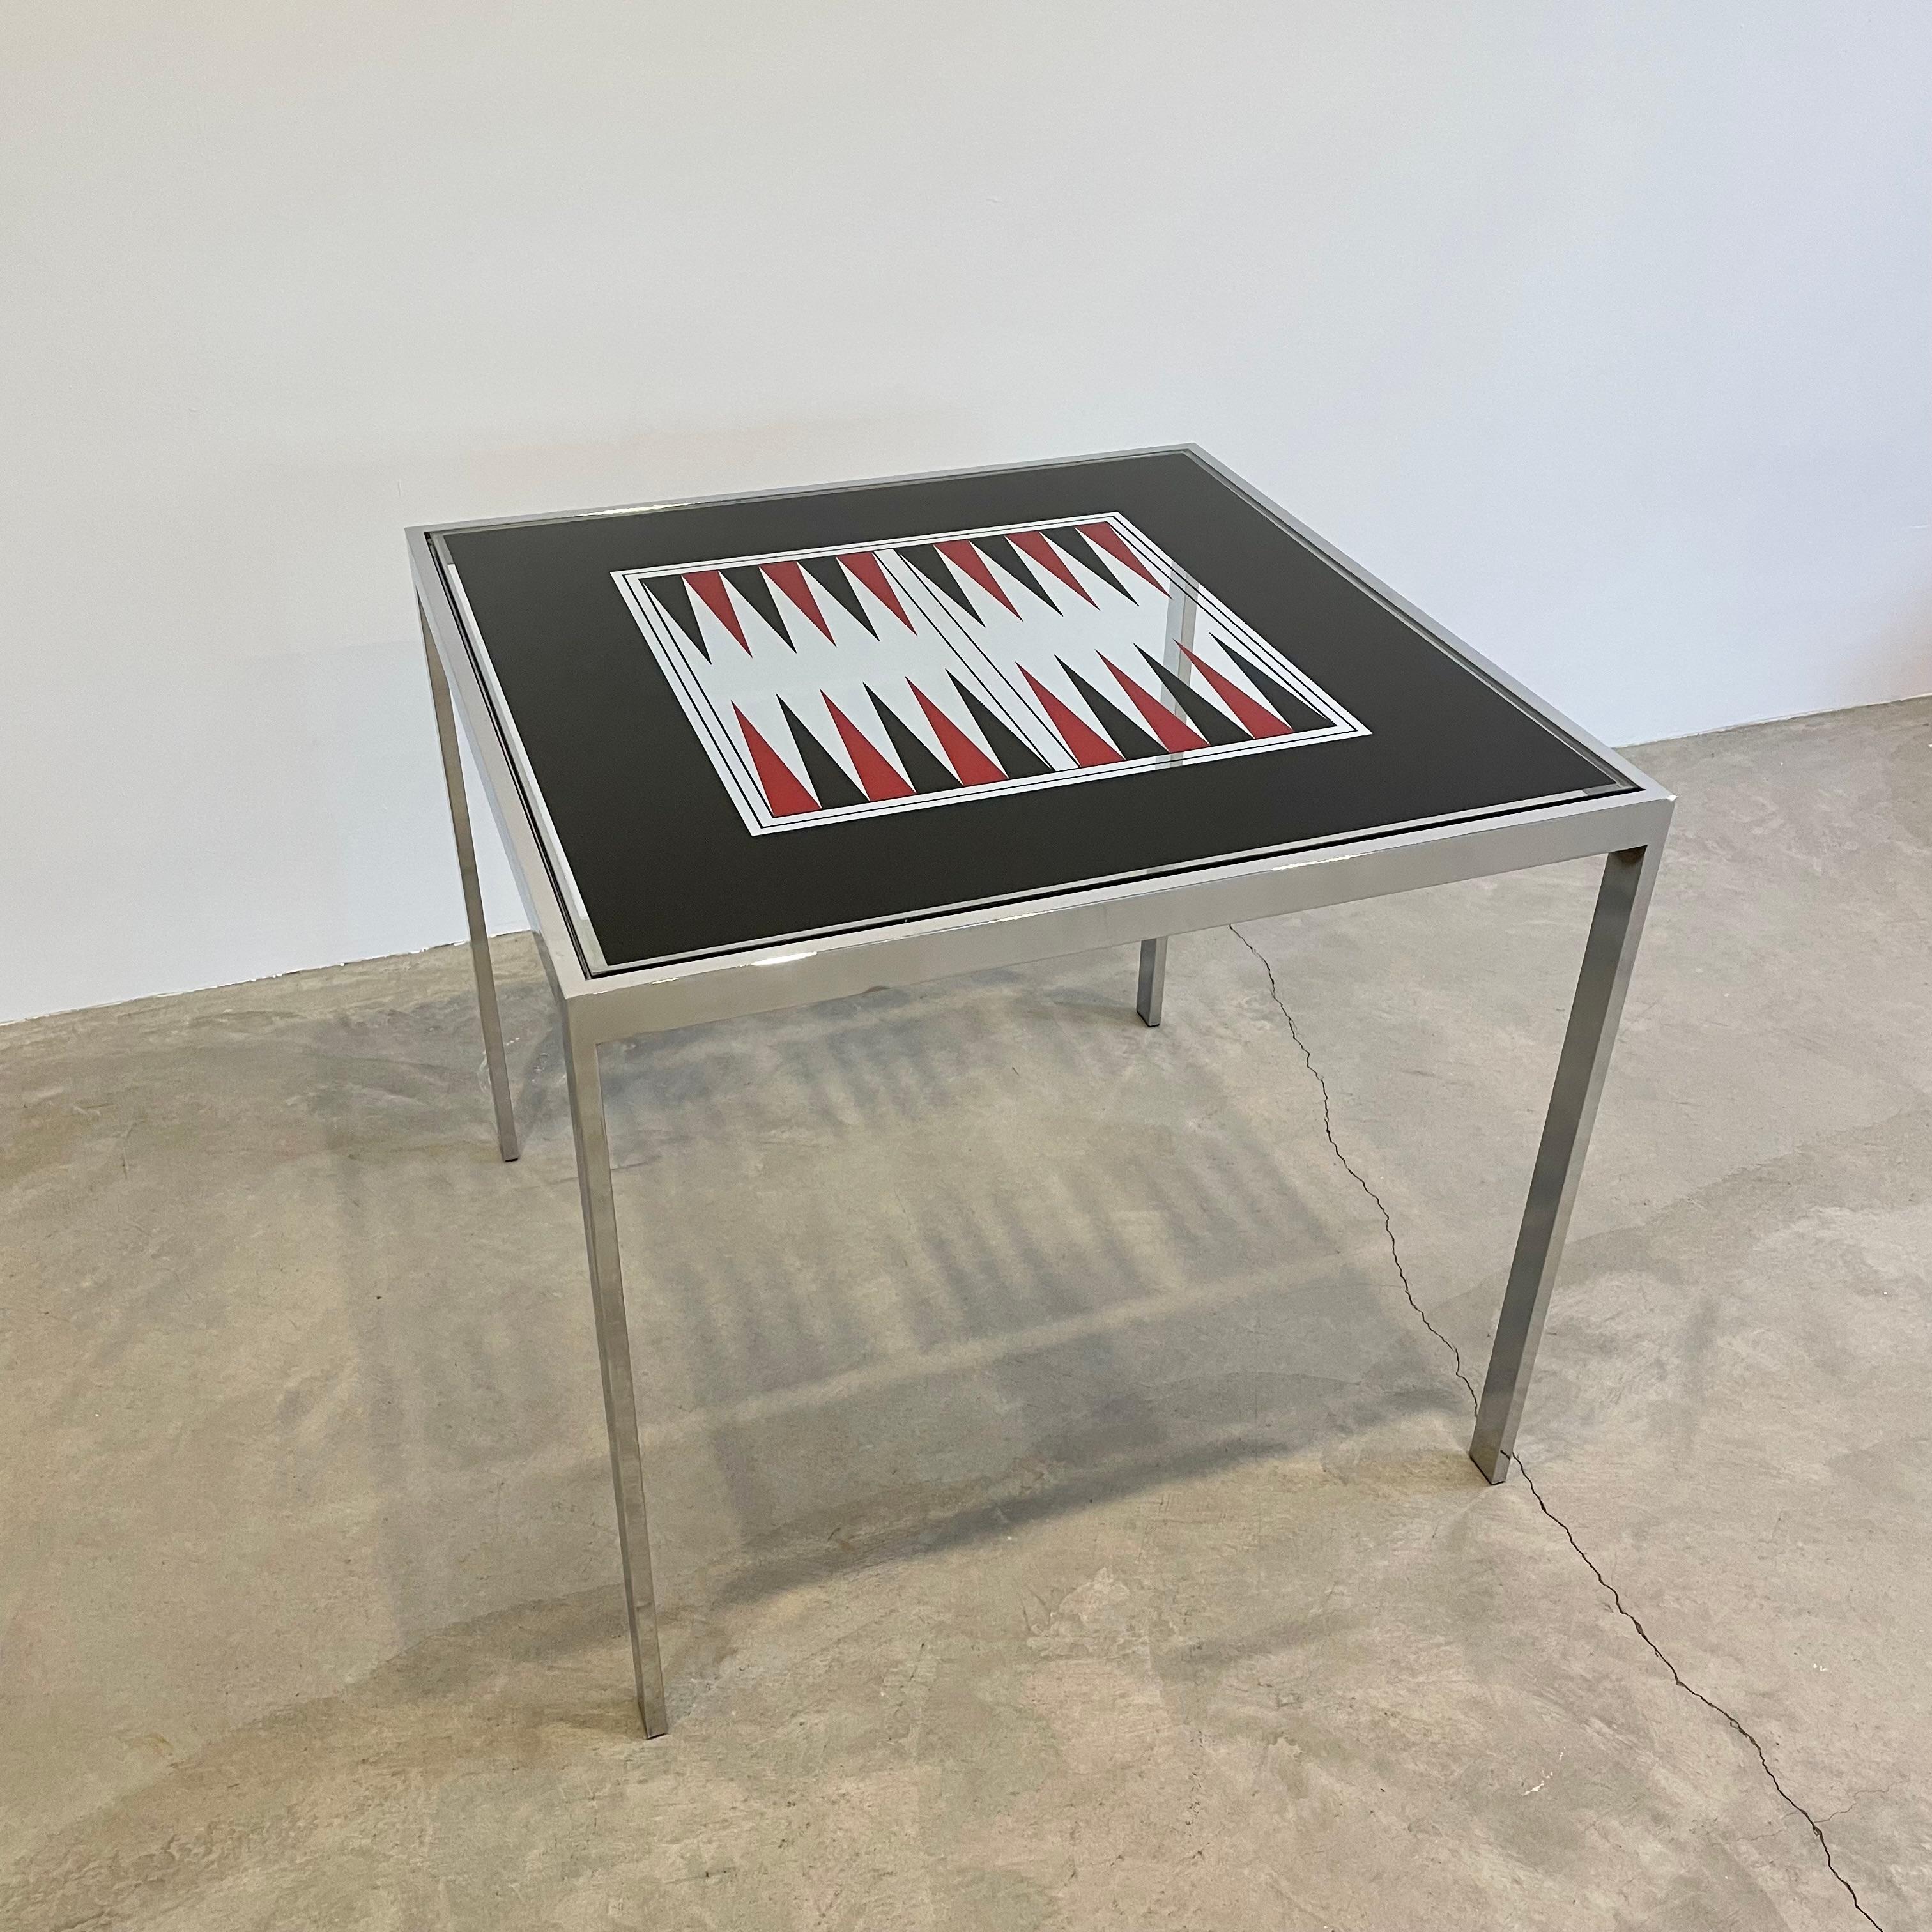 Schicker Maison Jansen Spieltisch aus verchromtem Stahl und Spiegelglas, um 1975. Das schlanke, minimalistische Design strahlt makellose Handwerkskunst aus. Eine wunderbare Ergänzung für jedes Heim oder Spielzimmer, die sich mühelos in eine Vielzahl